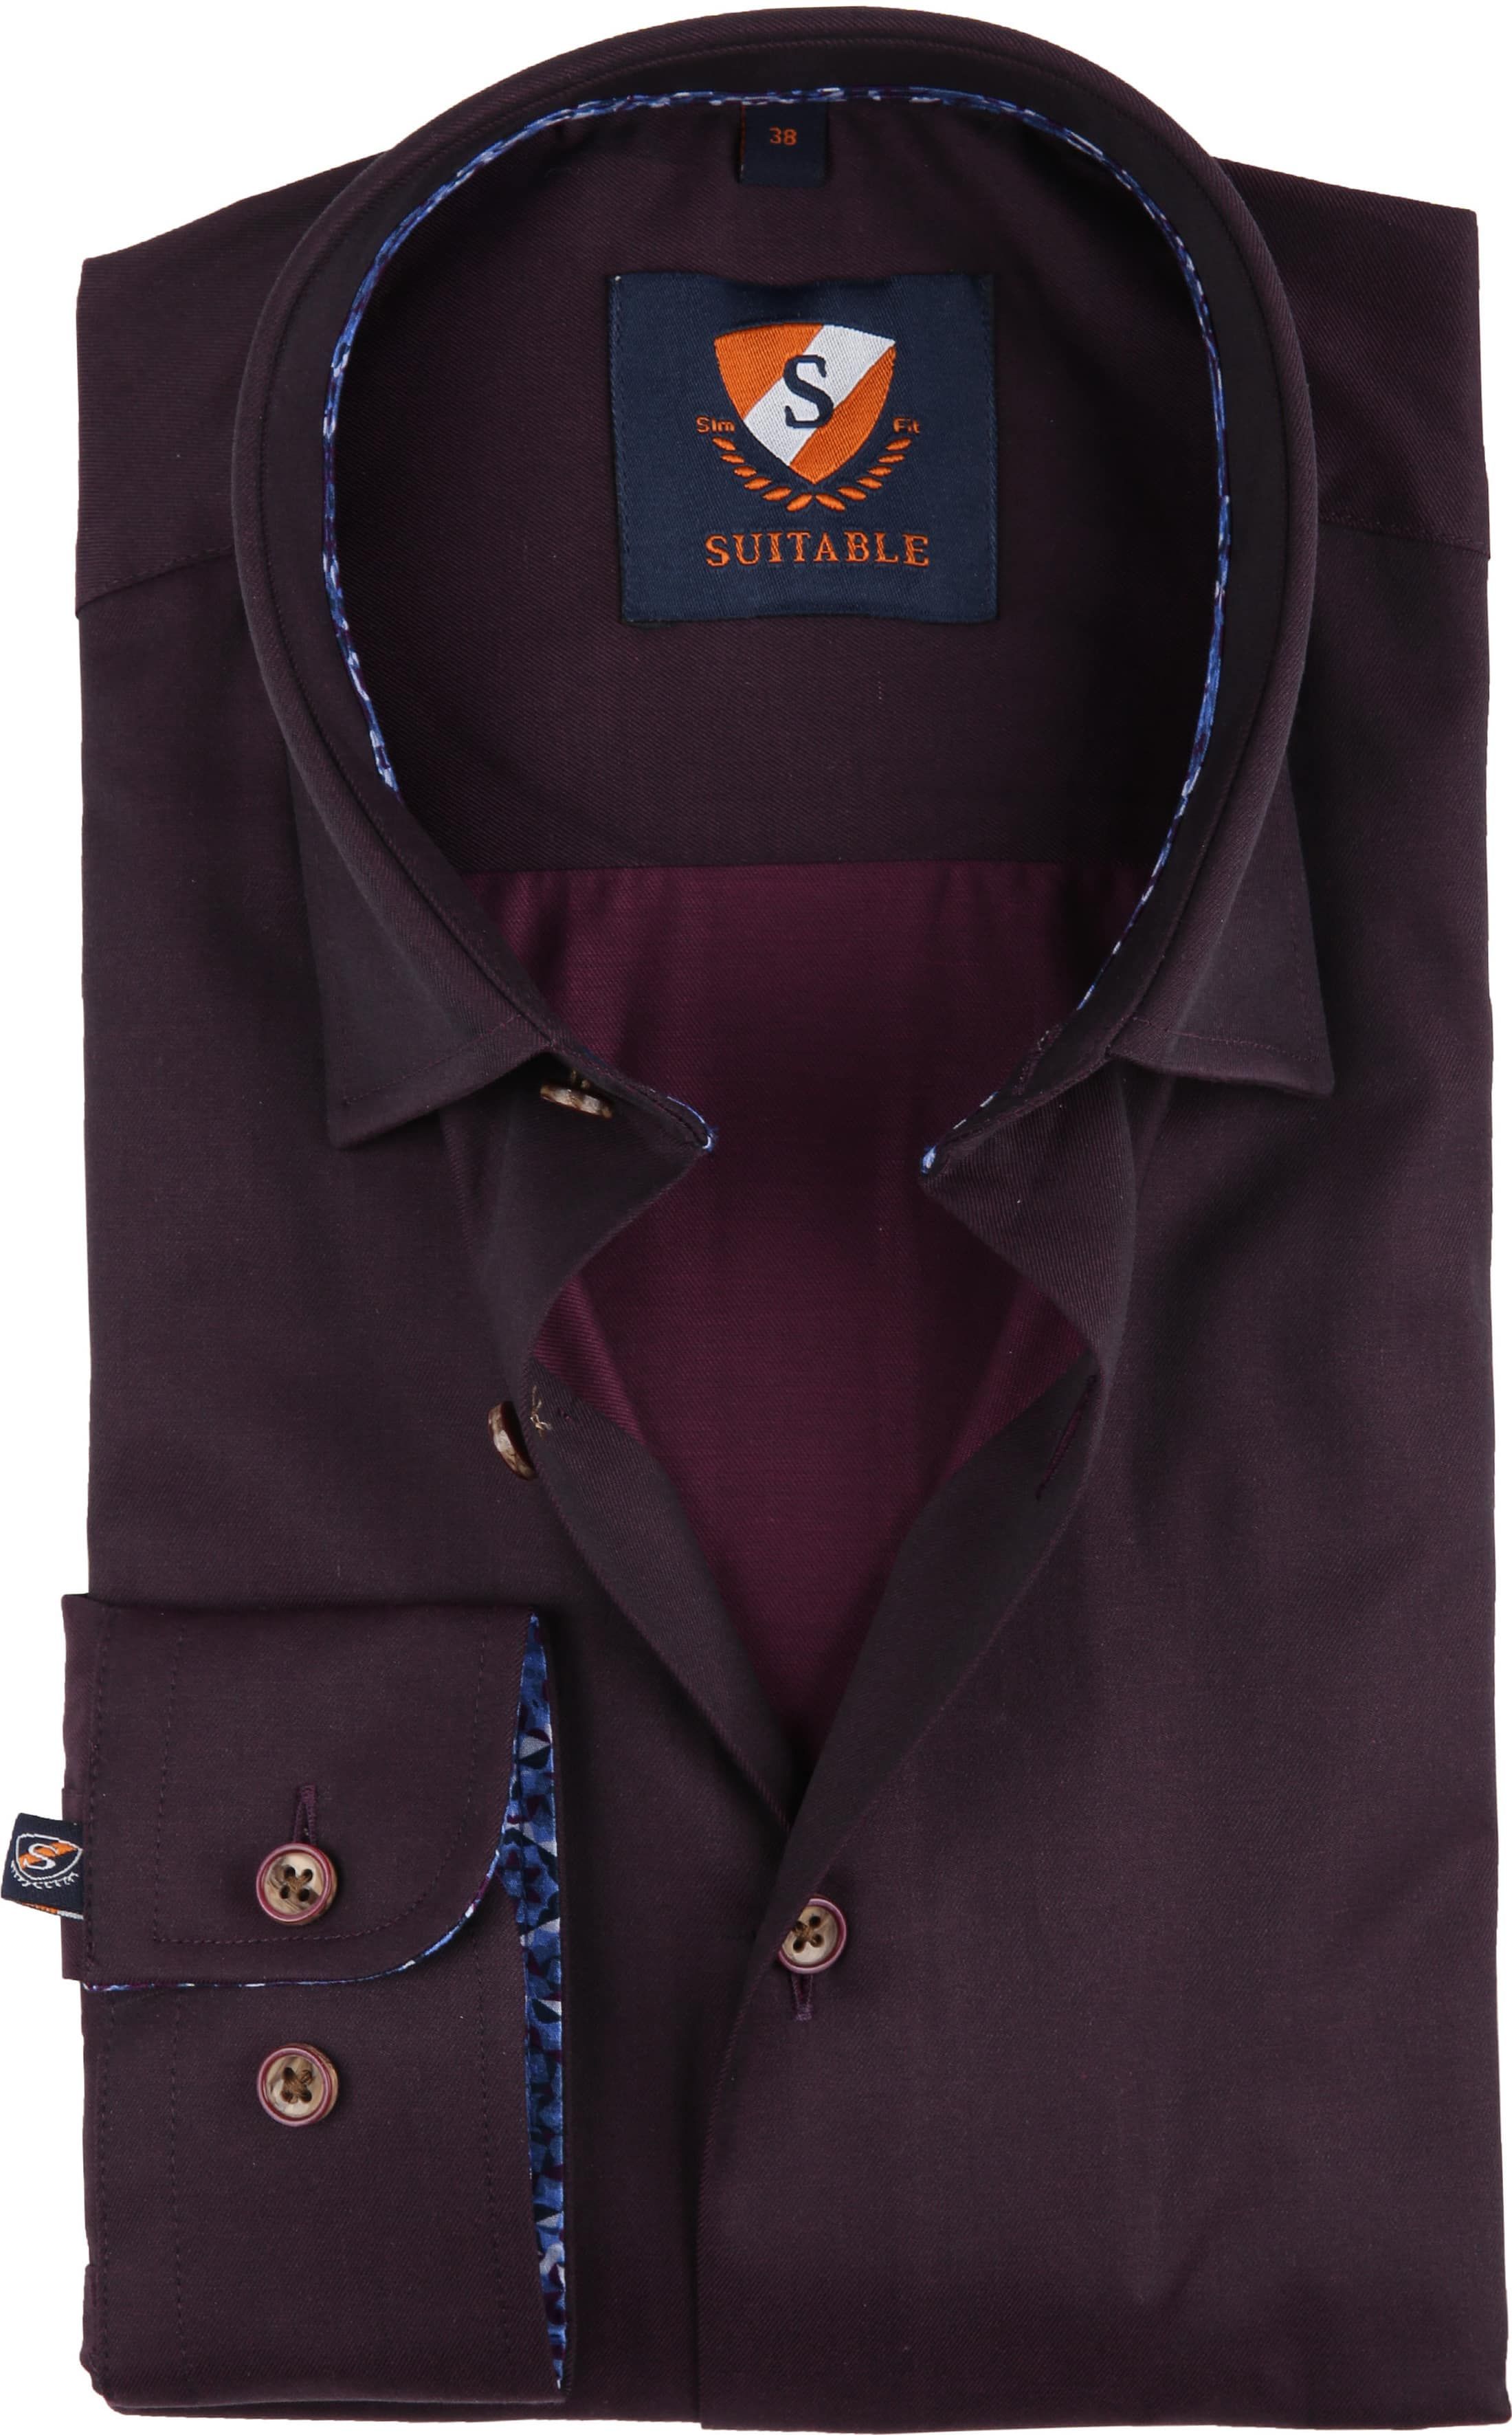 Suitable Shirt Bordeaux 188-5 Burgundy size 15 1/2